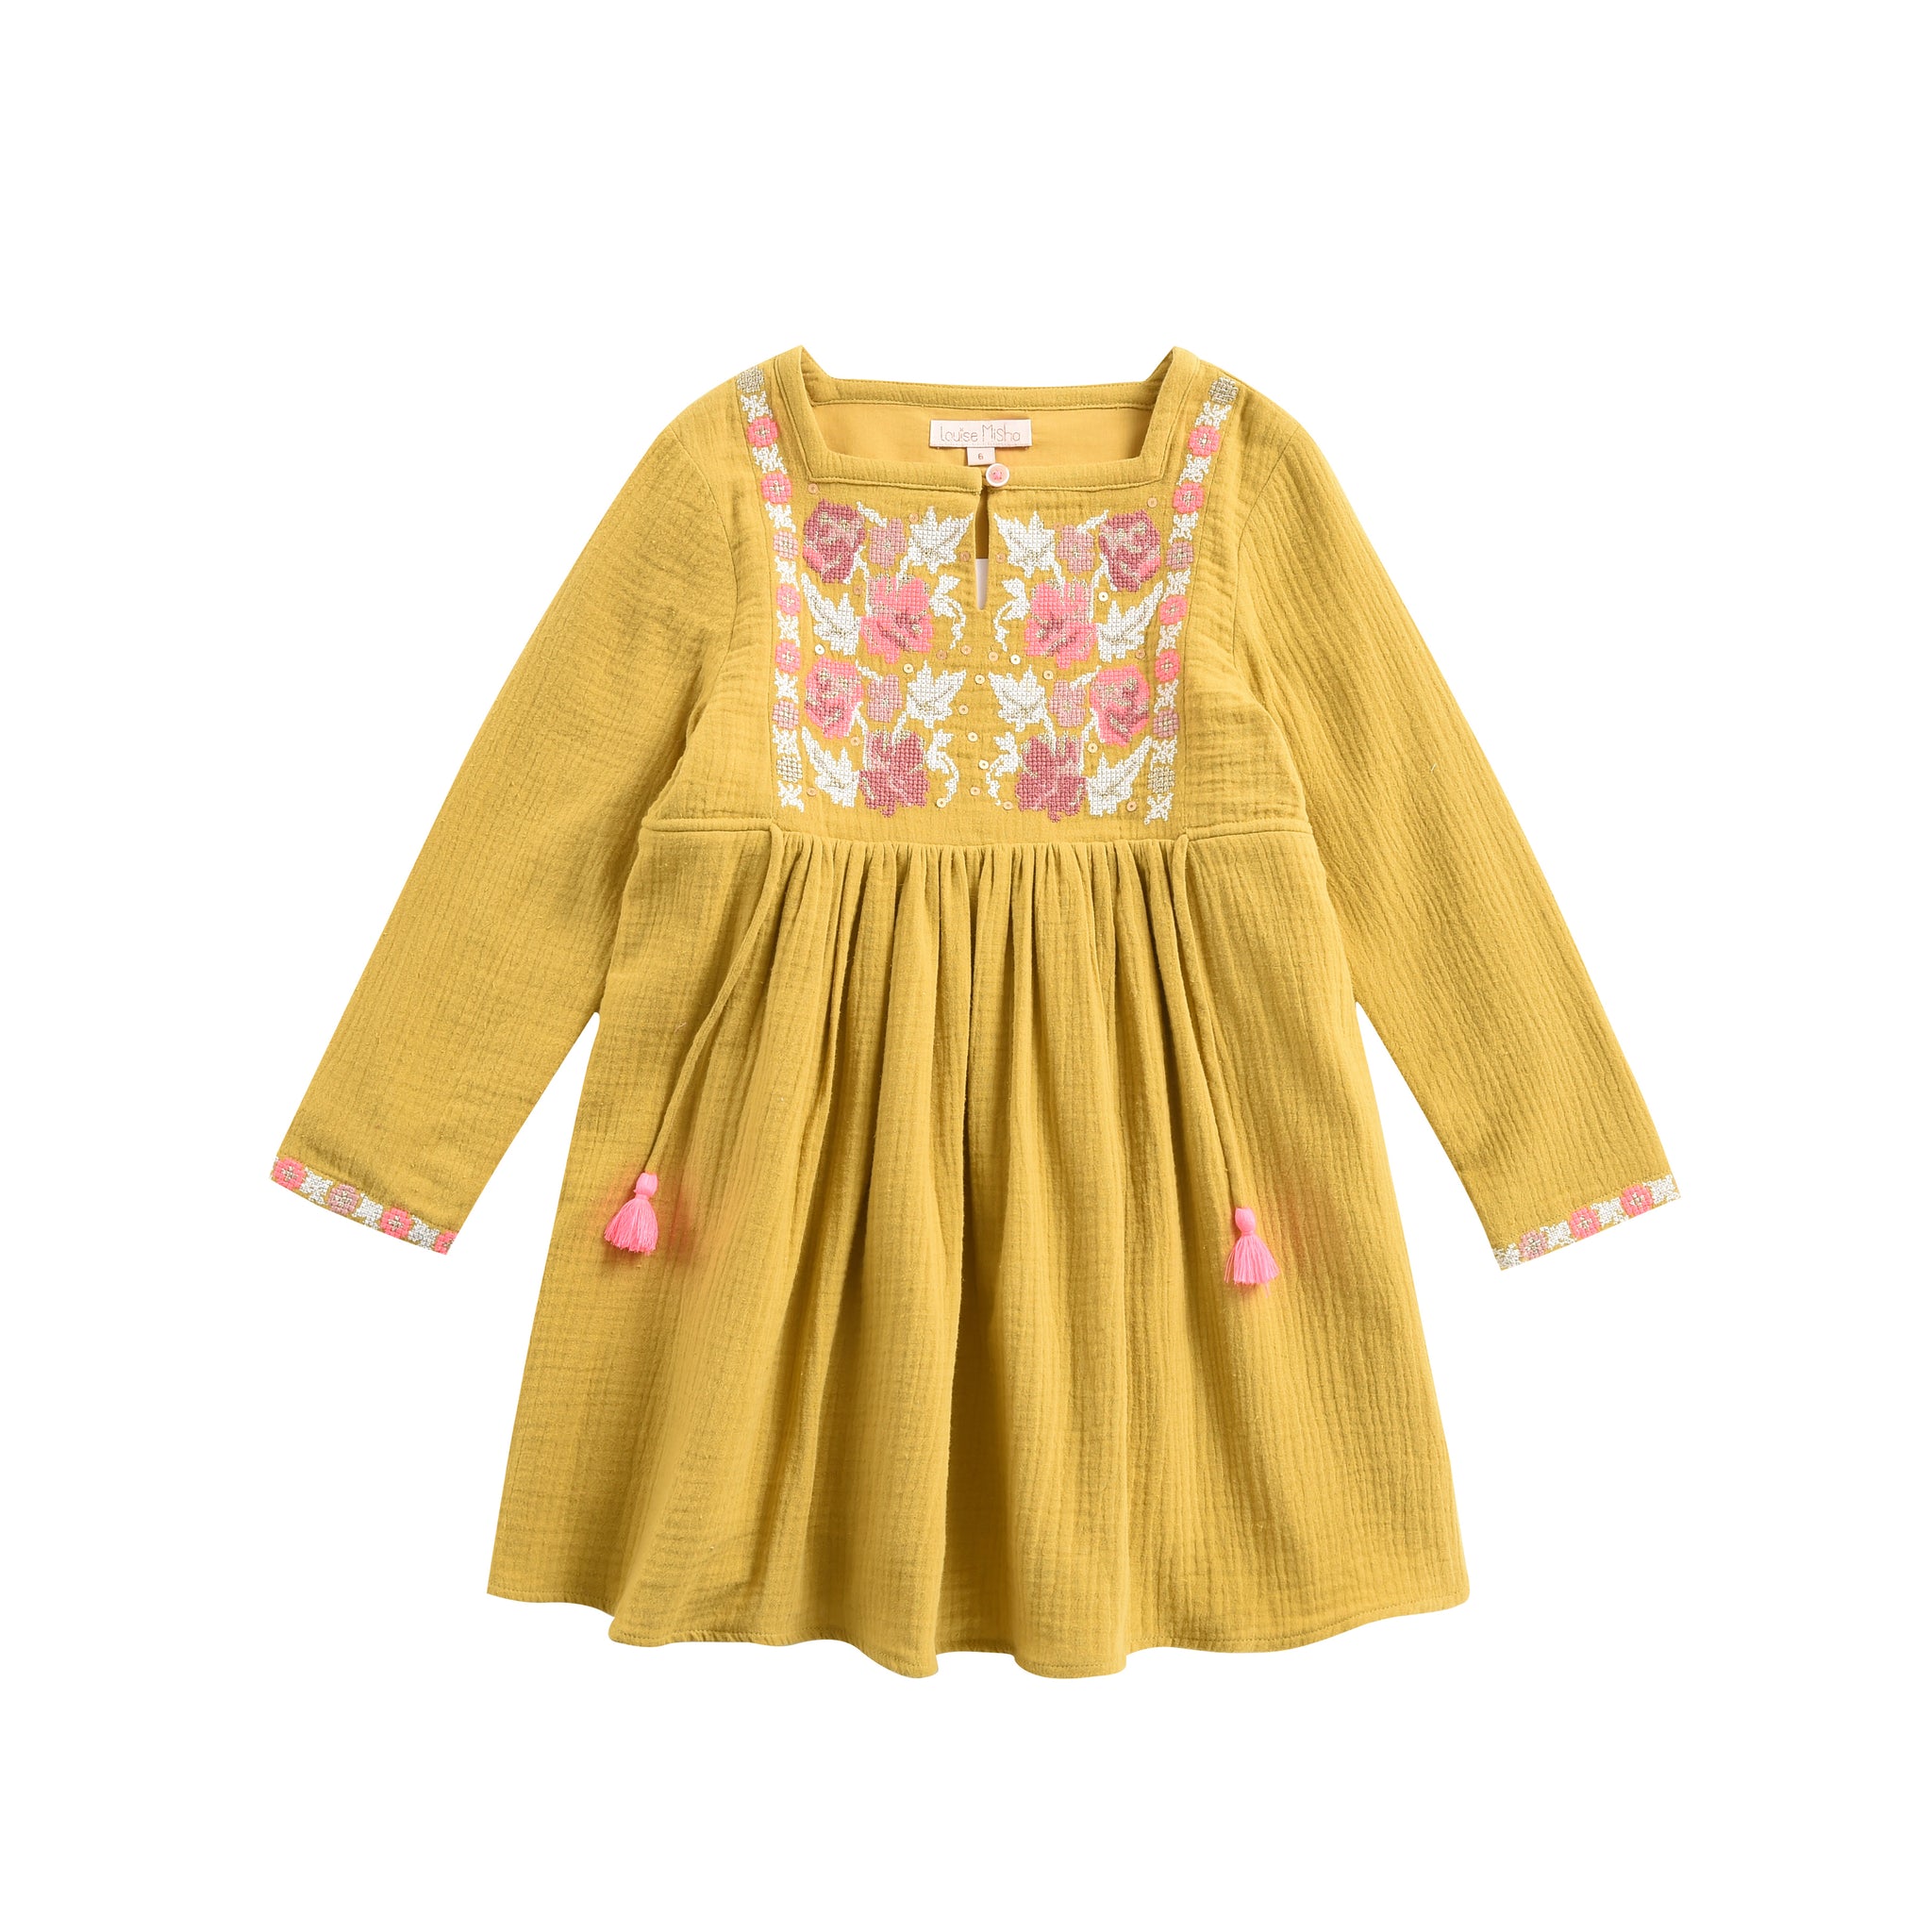 Dress Uros Honey - Cemarose Children's Fashion Boutique